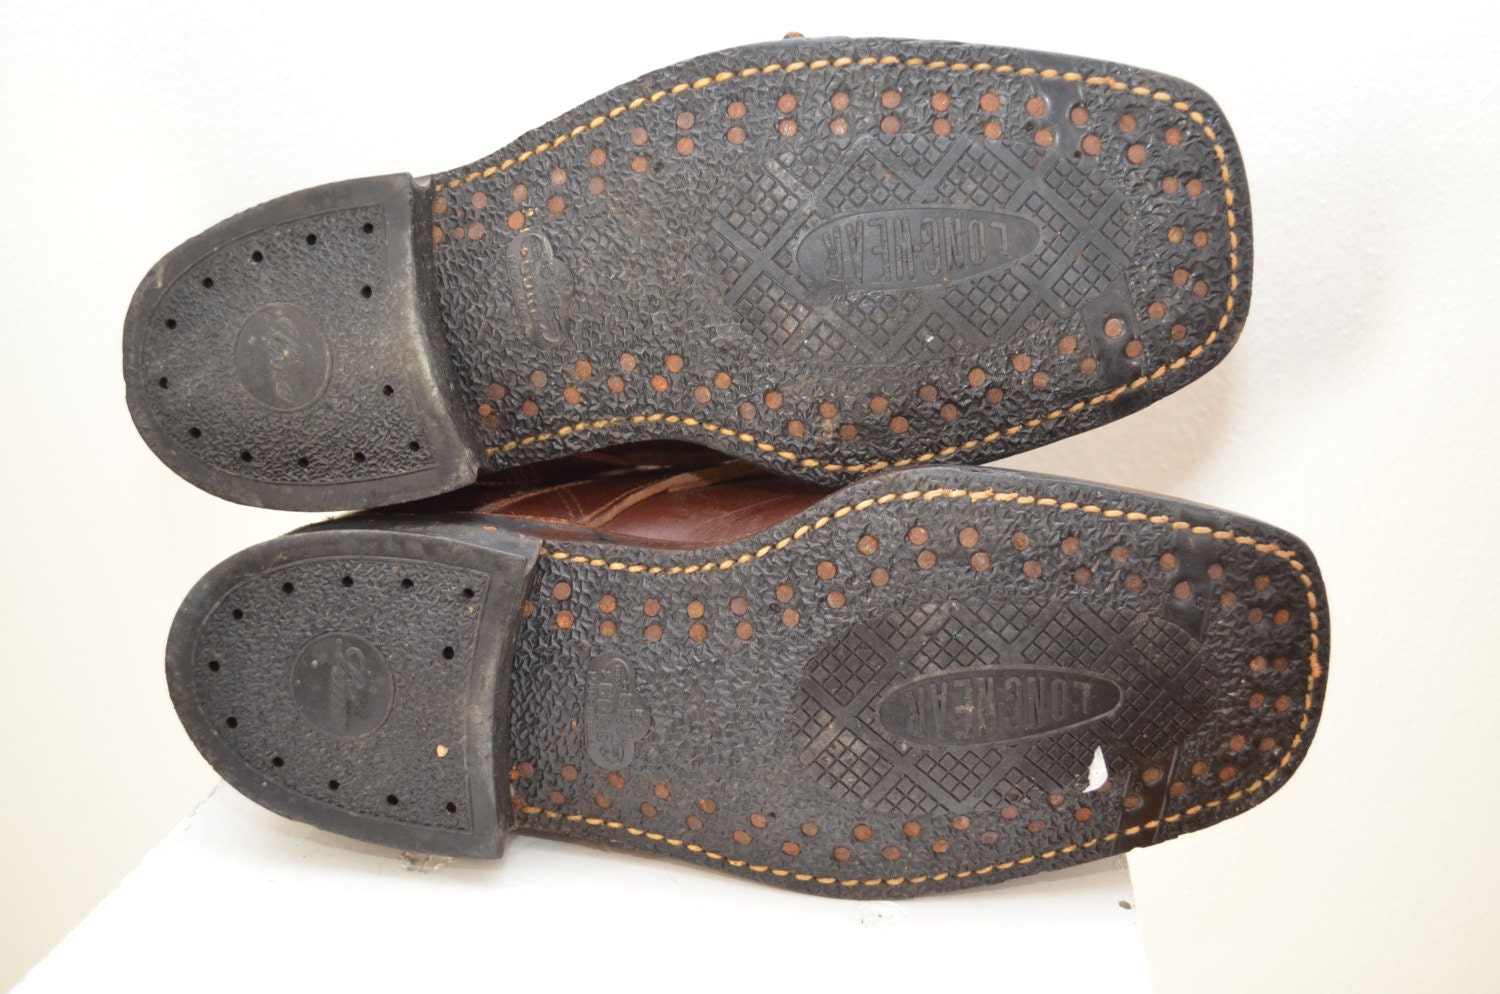 Vintage Leather Strap BOOTS Gro Cord cork soles mens sz. 7 D